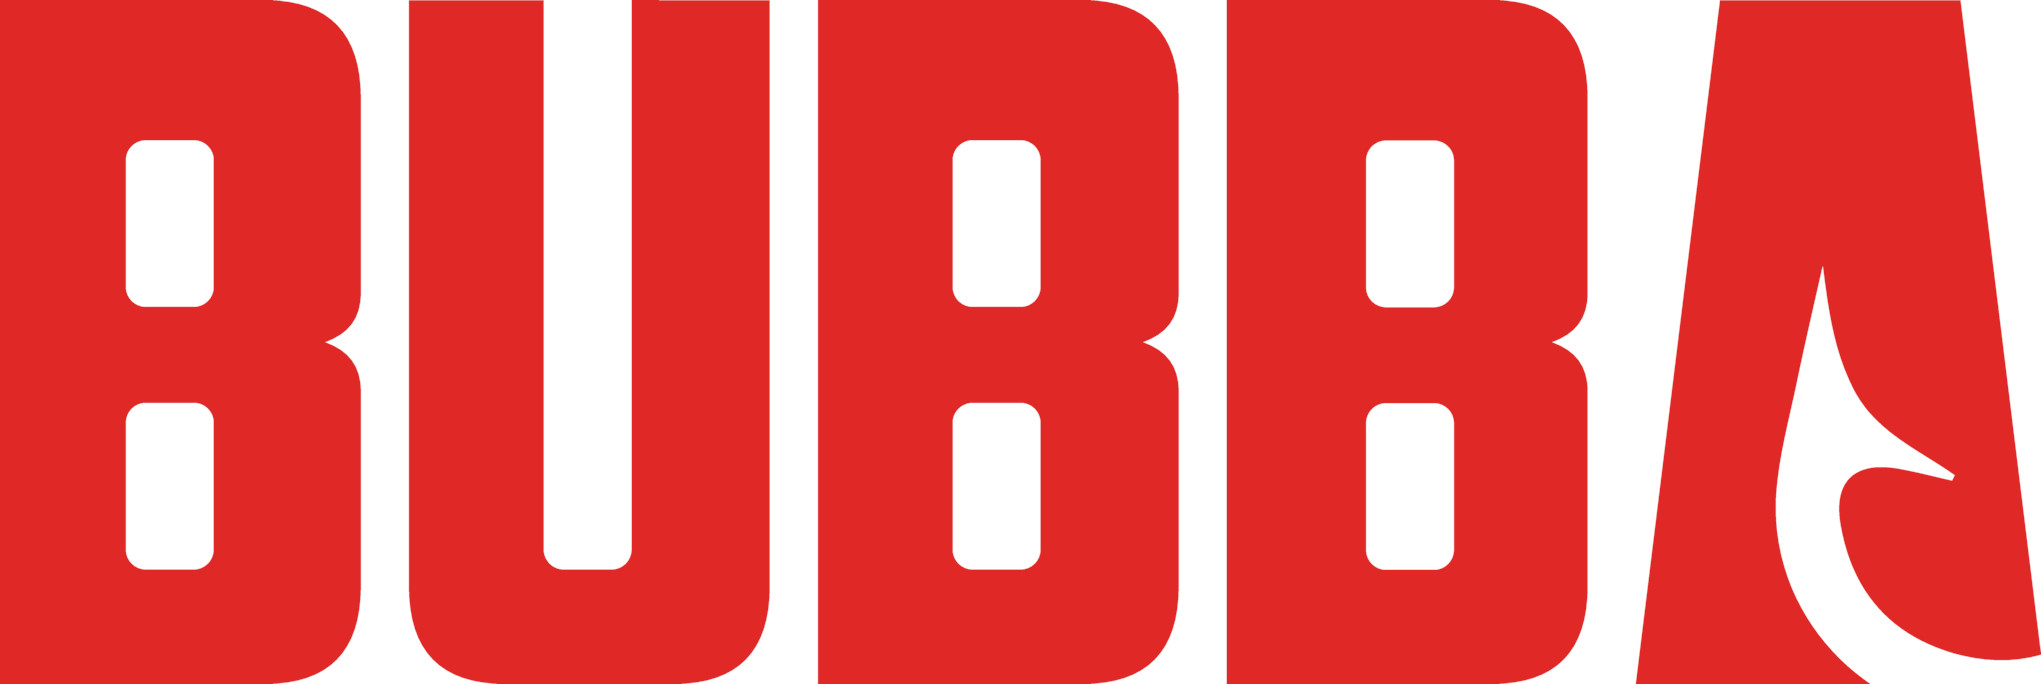 bubba-logo.jpg